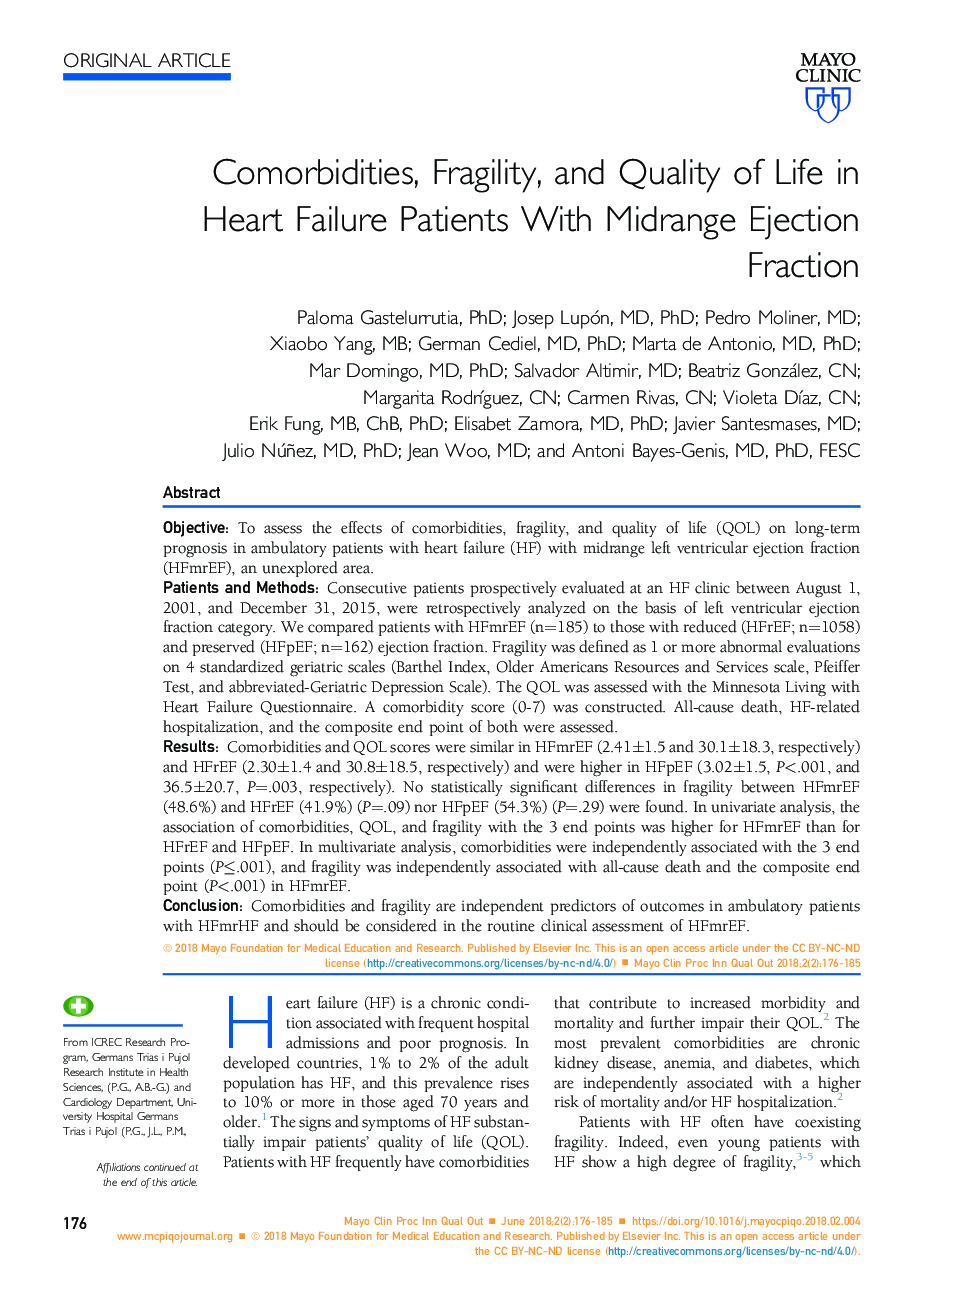 هموگلوبین، ضعف و کیفیت زندگی بیماران مبتلا به نارسایی قلبی با ضریب تخریب متوسطه